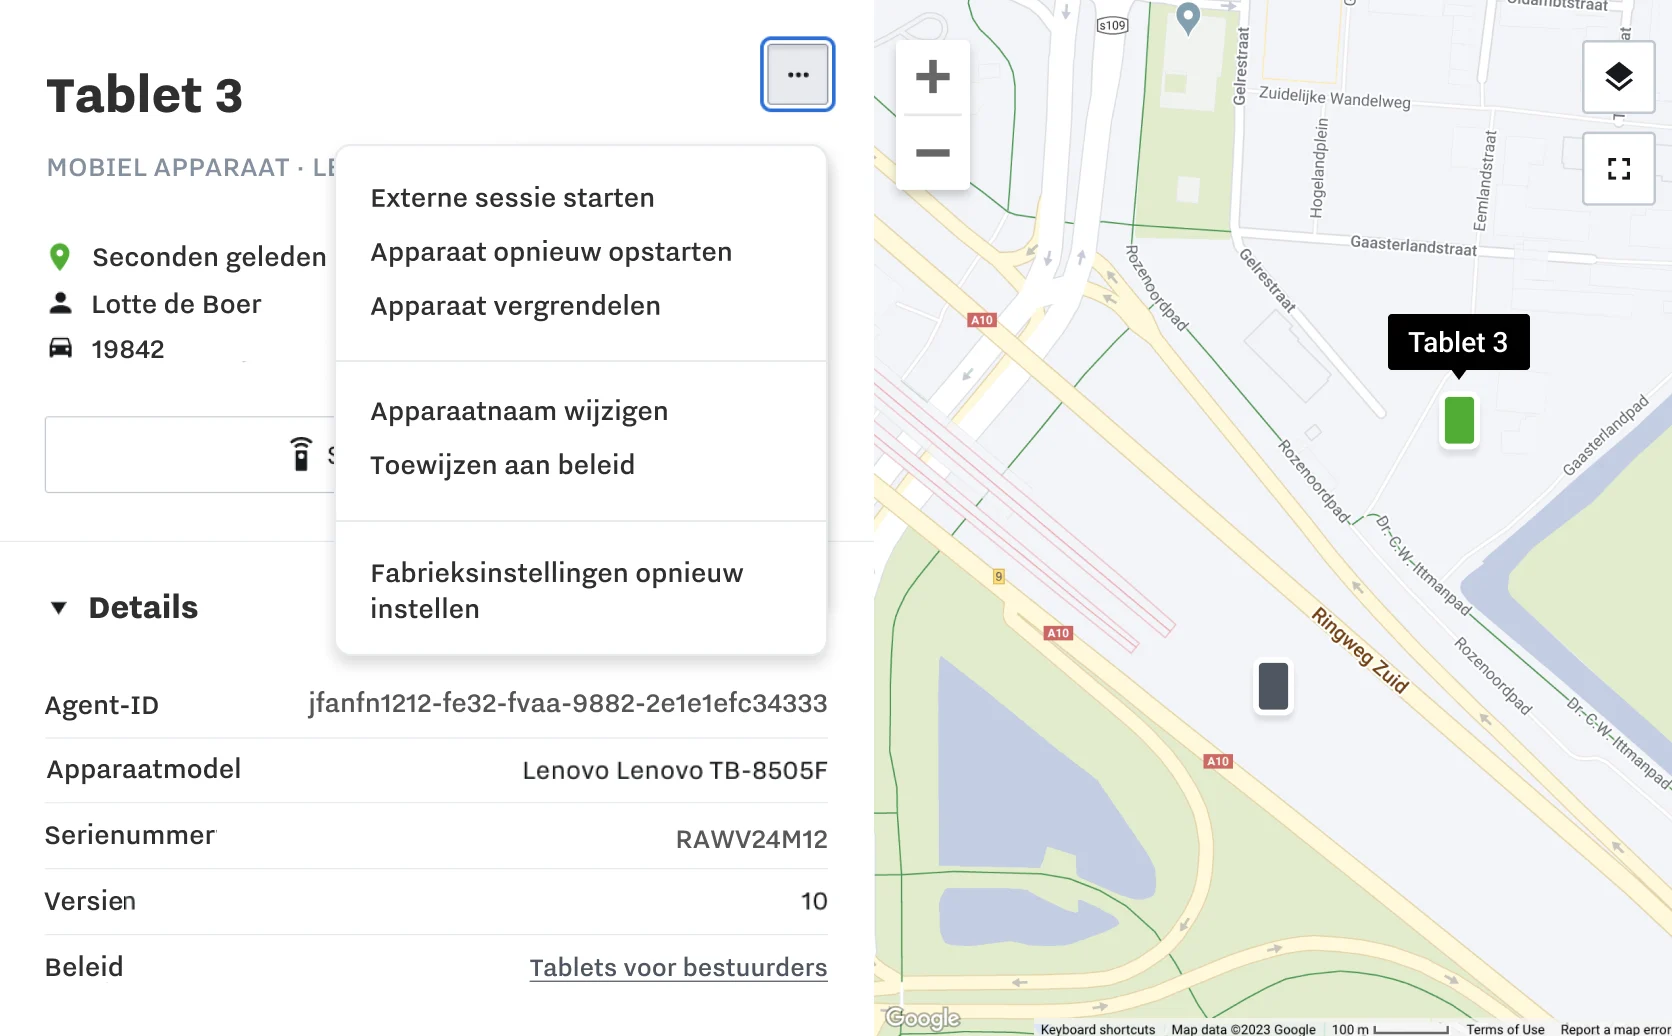 Productafbeelding Samsara-dashboard met informatie over mobiele apparaten en een kaart met locaties van mobiele apparaten